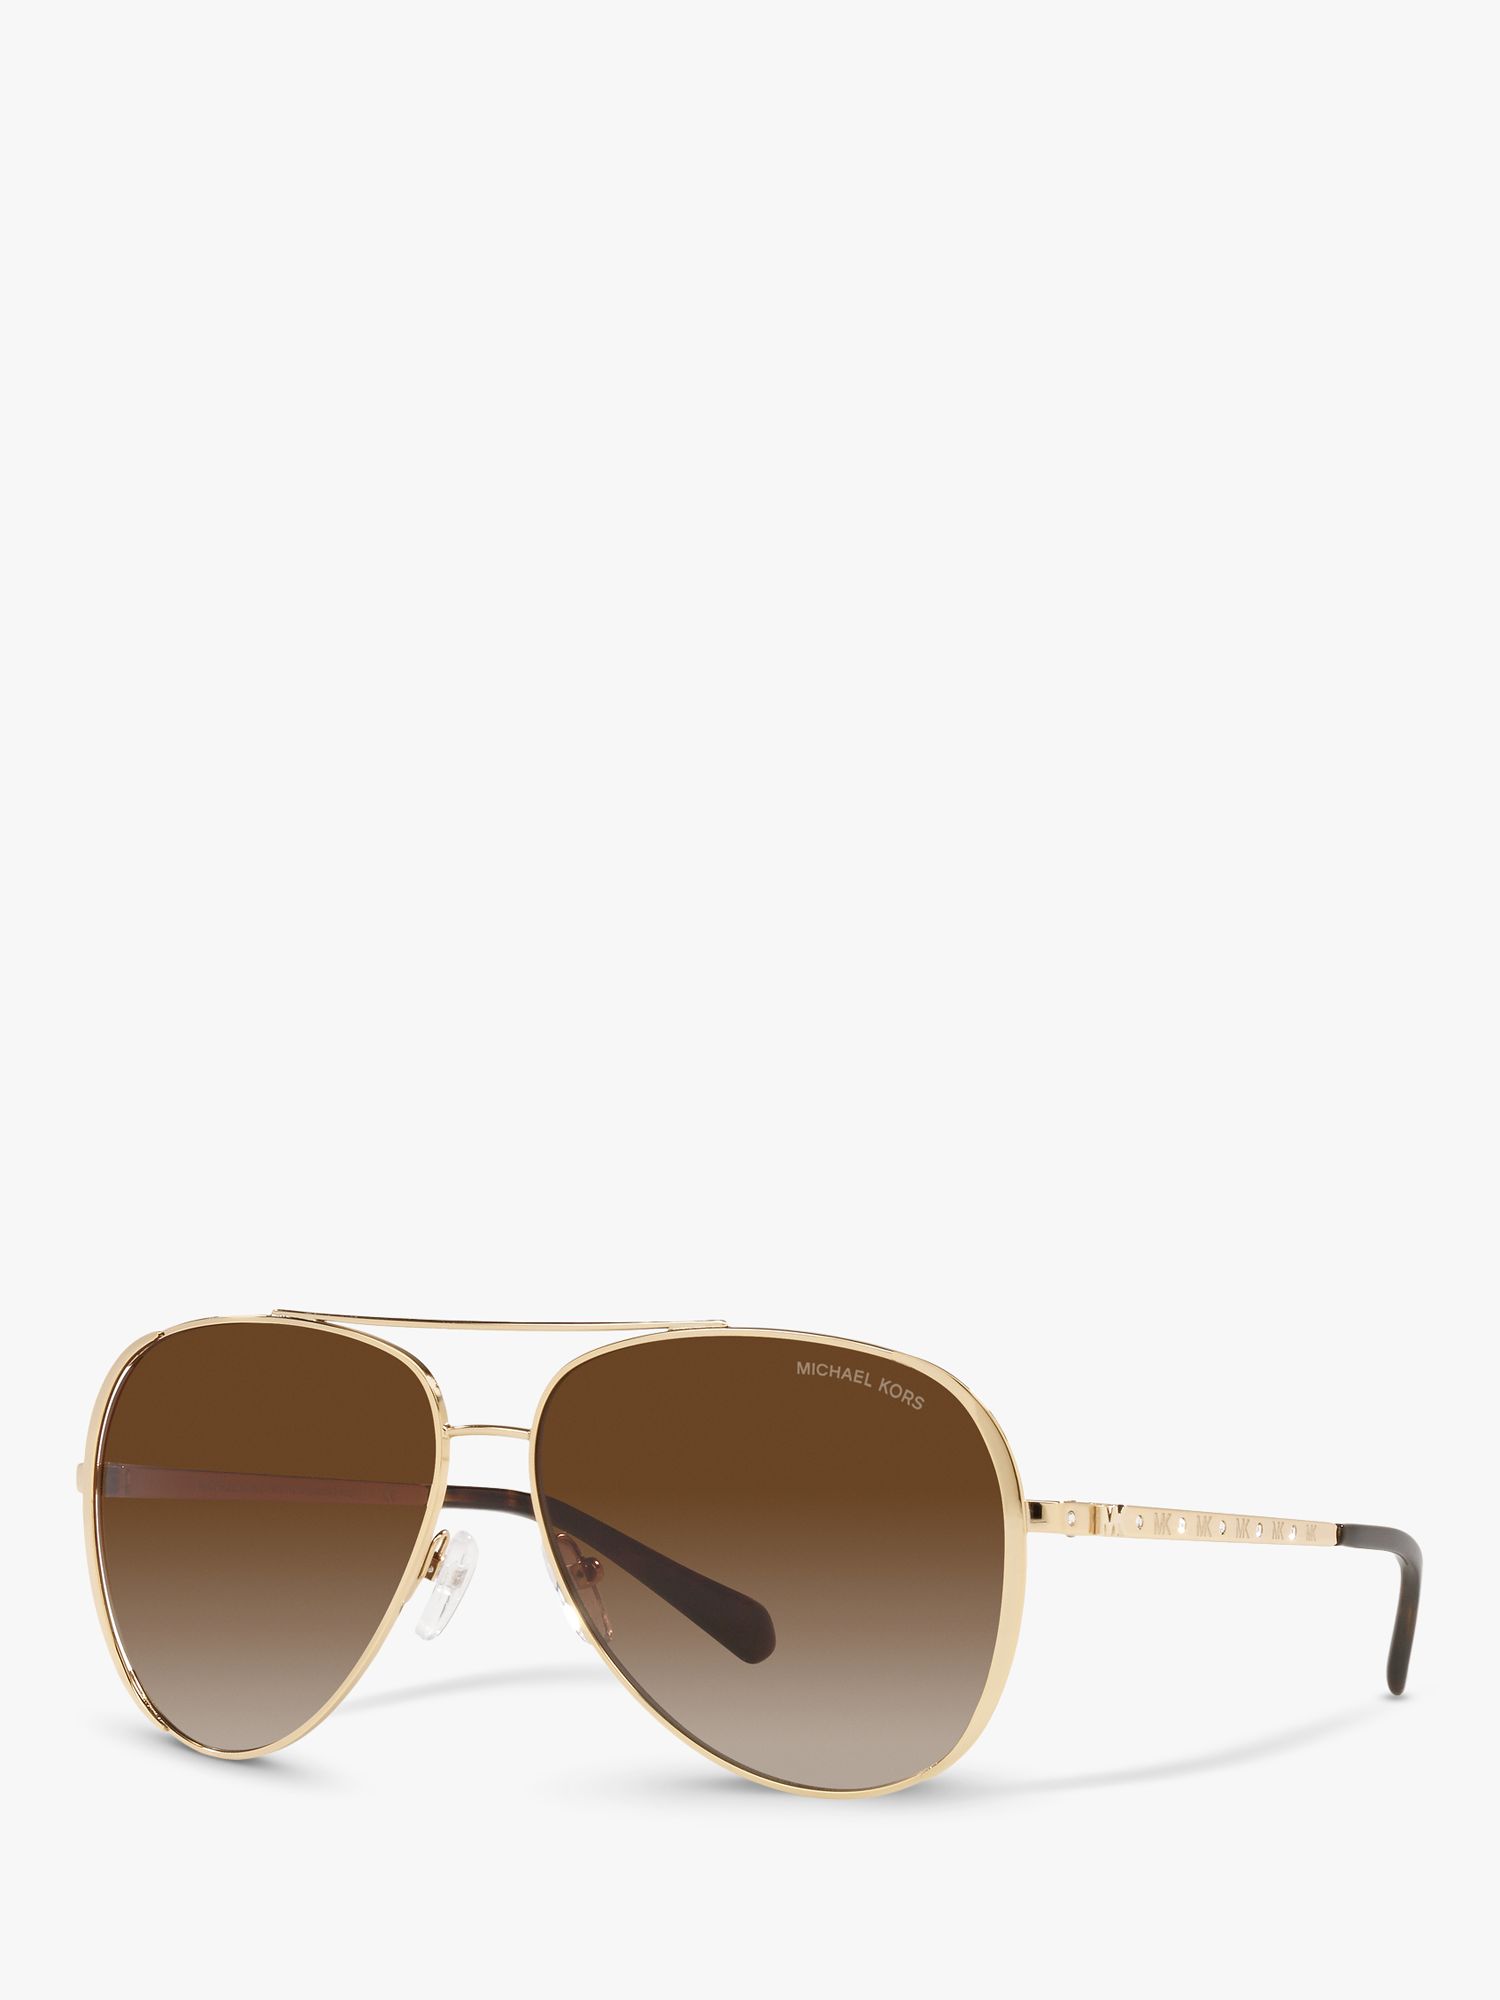 Michael Kors MK1101B Women's Chelsea Aviator Sunglasses, Gold/Brown  Gradient at John Lewis & Partners